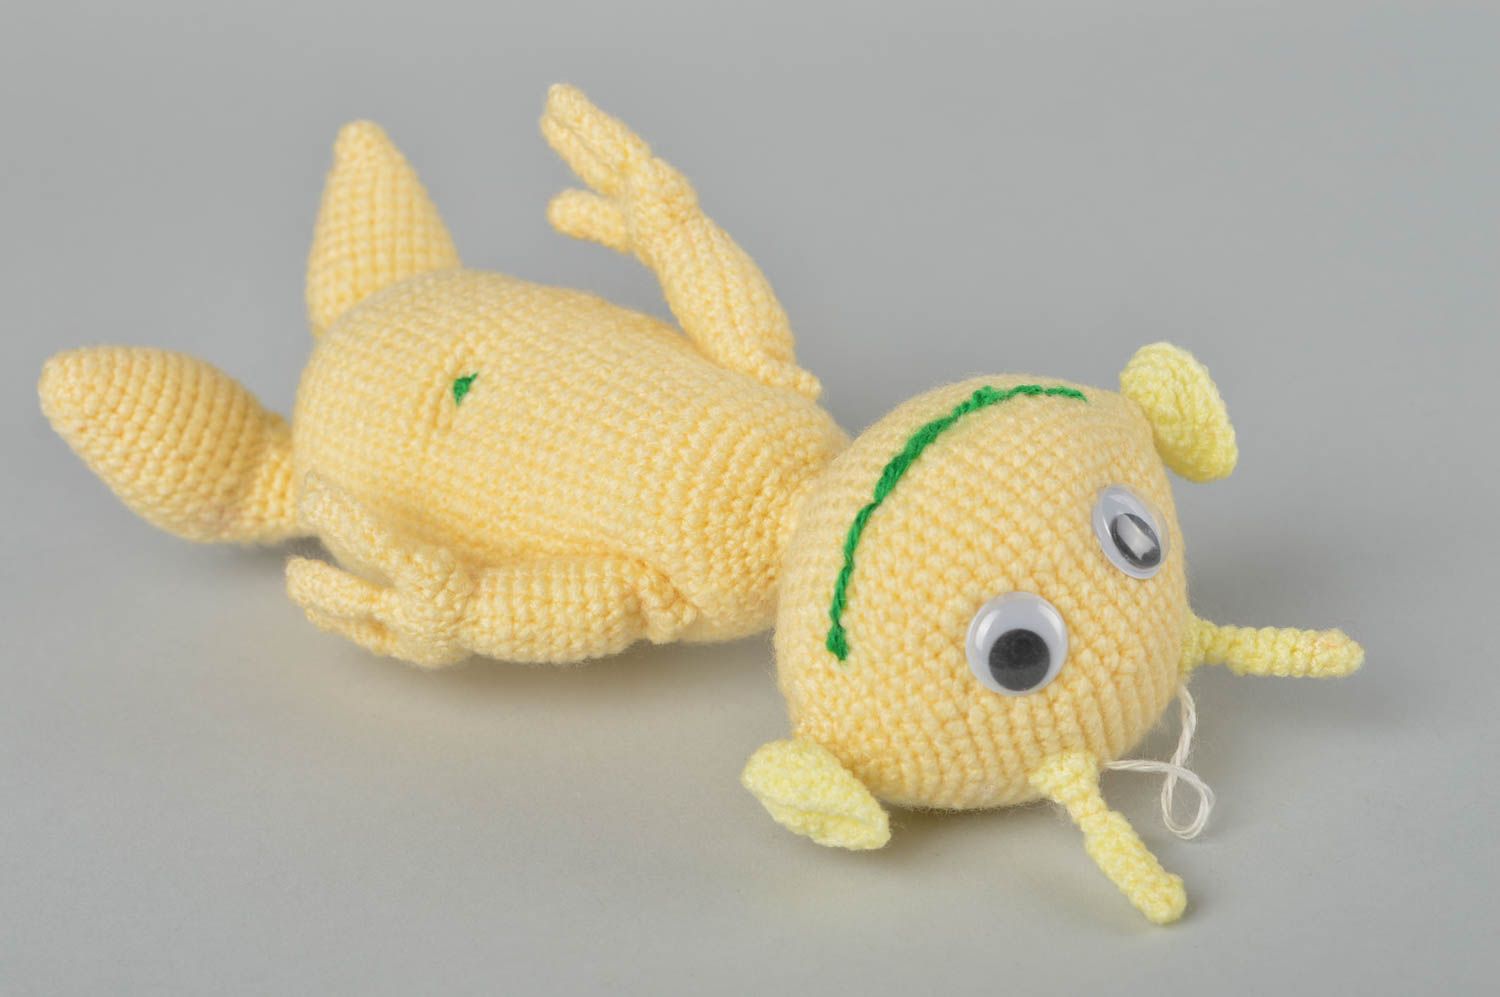 Handmade crocheted toys creative toys for children stylish toys nursery decor photo 2